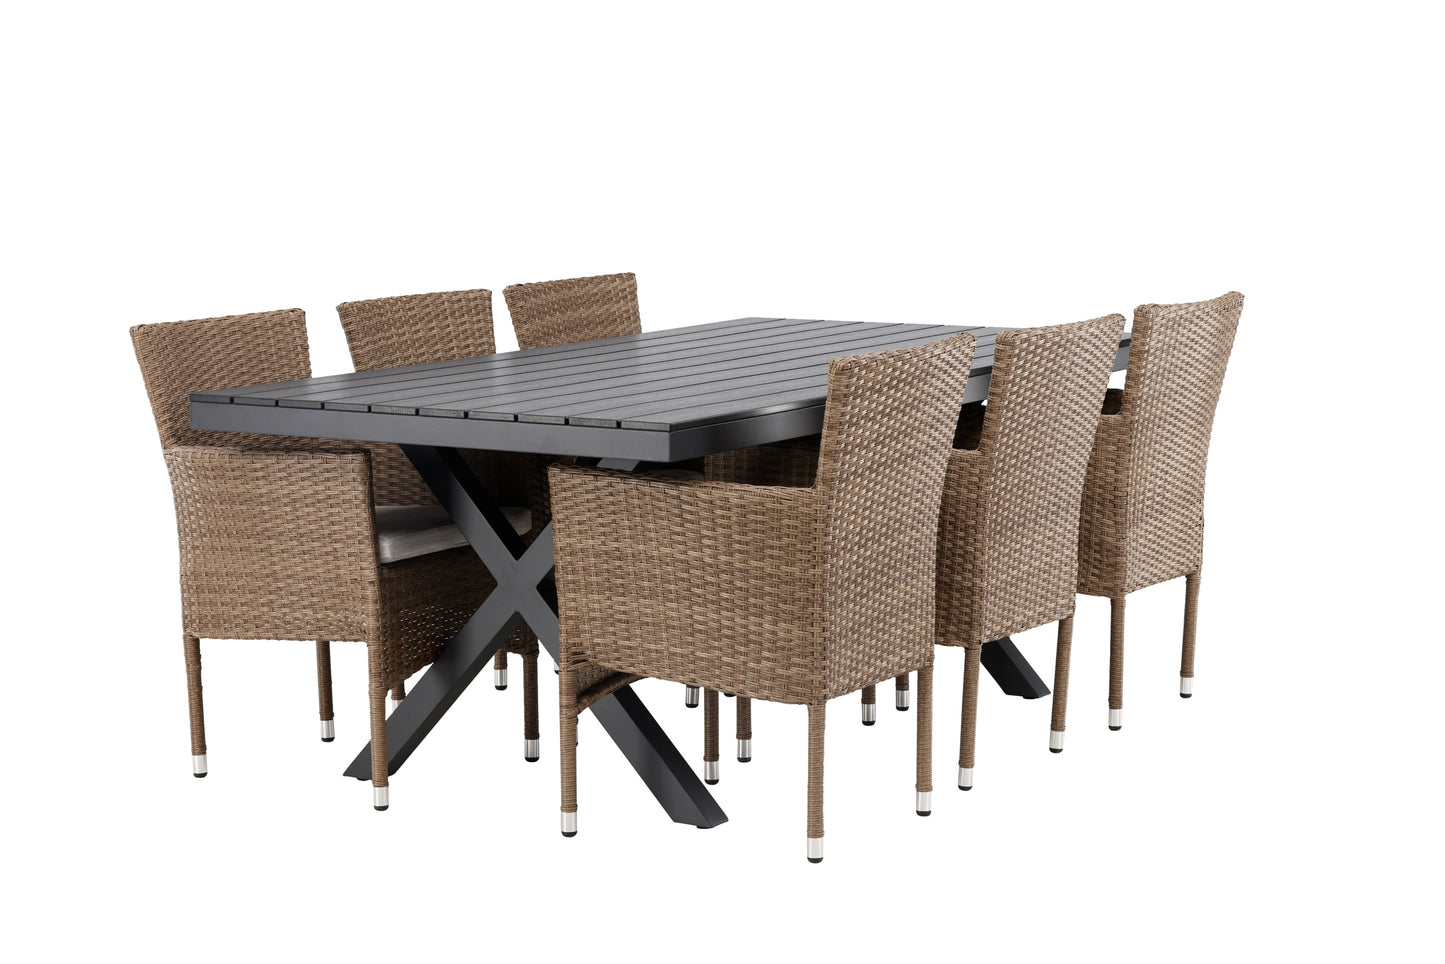 Garcia - Spisebord, Aluminium - Sort / Rektangulær 100*200* + Malia stol Aluminium - Natur / flet